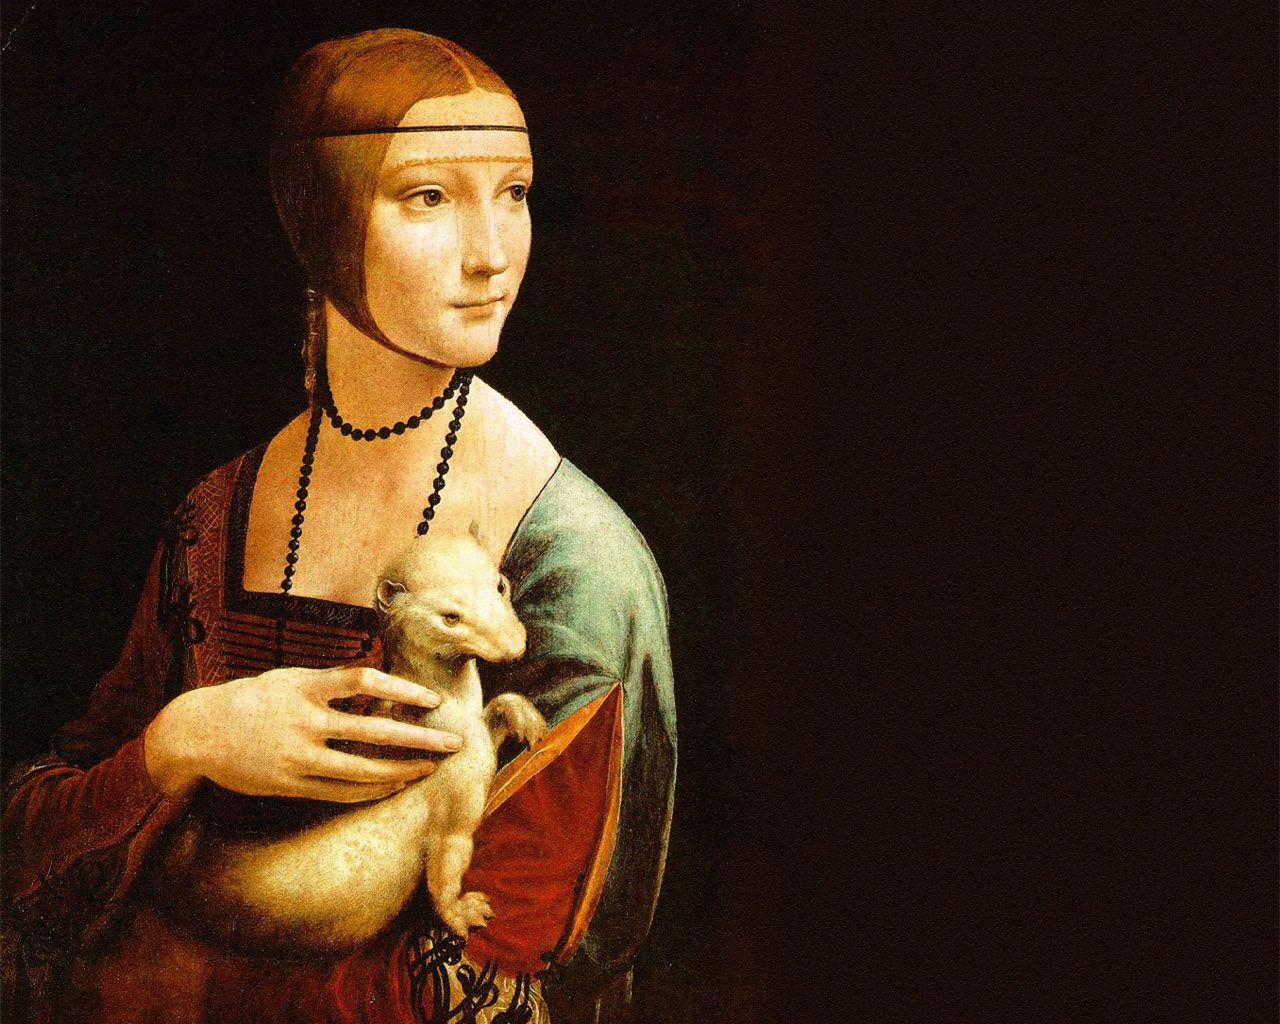 عکس نقاشی بانویی با قاقم از نقاش مشهور ایتالیایی لئوناردو داوینچی